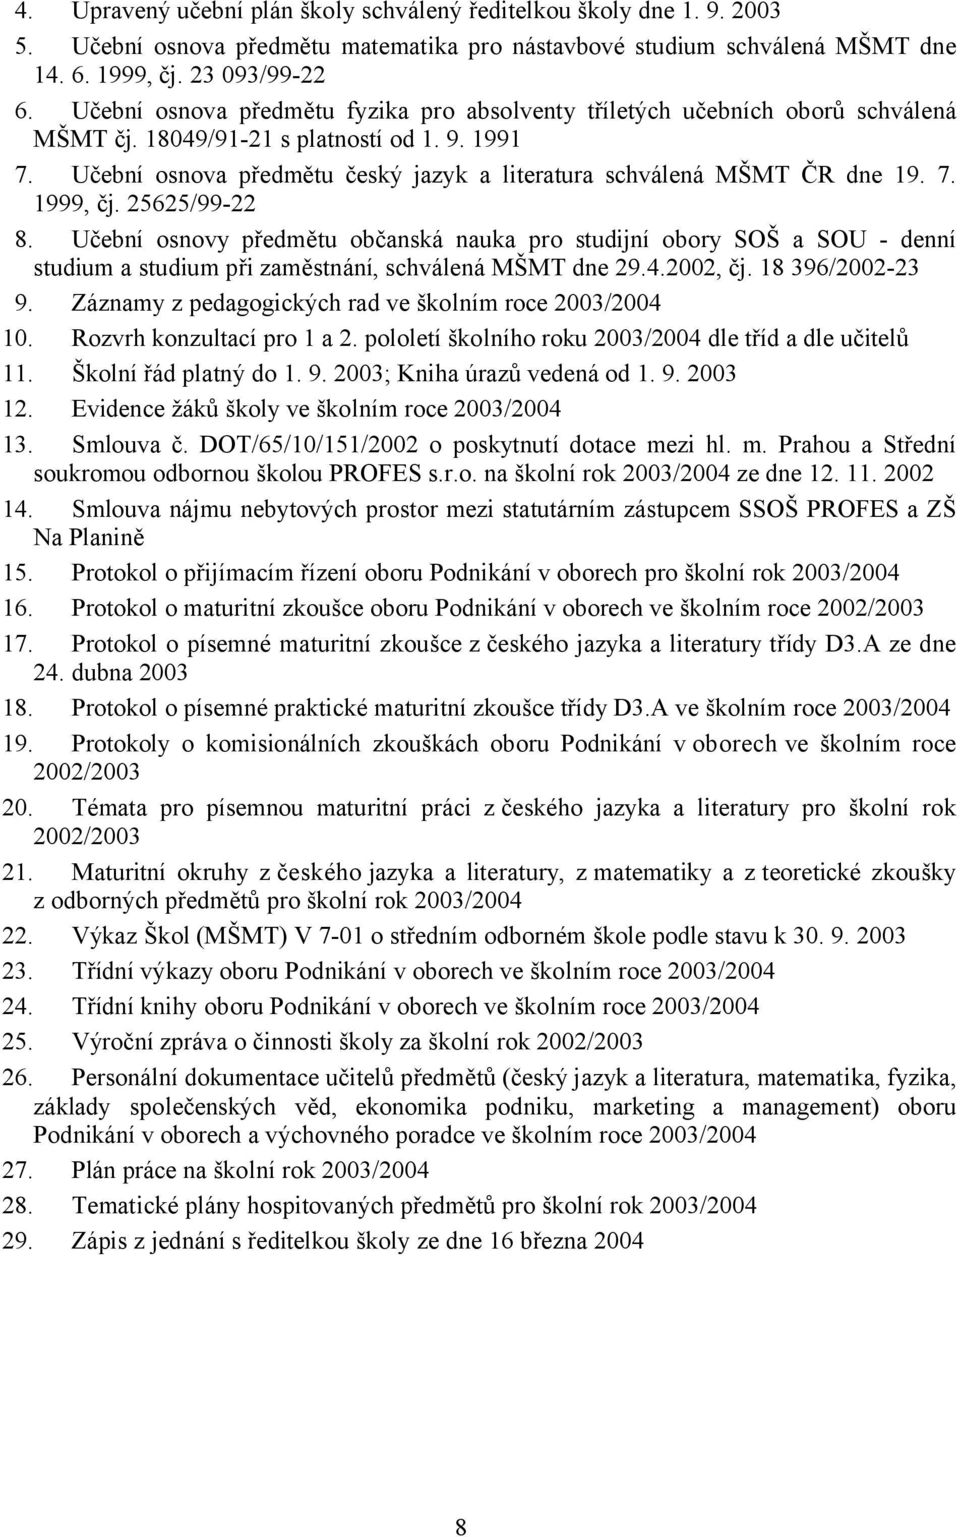 Učební osnova předmětu český jazyk a literatura schválená MŠMT ČR dne 19. 7. 1999, čj. 25625/99-22 8.